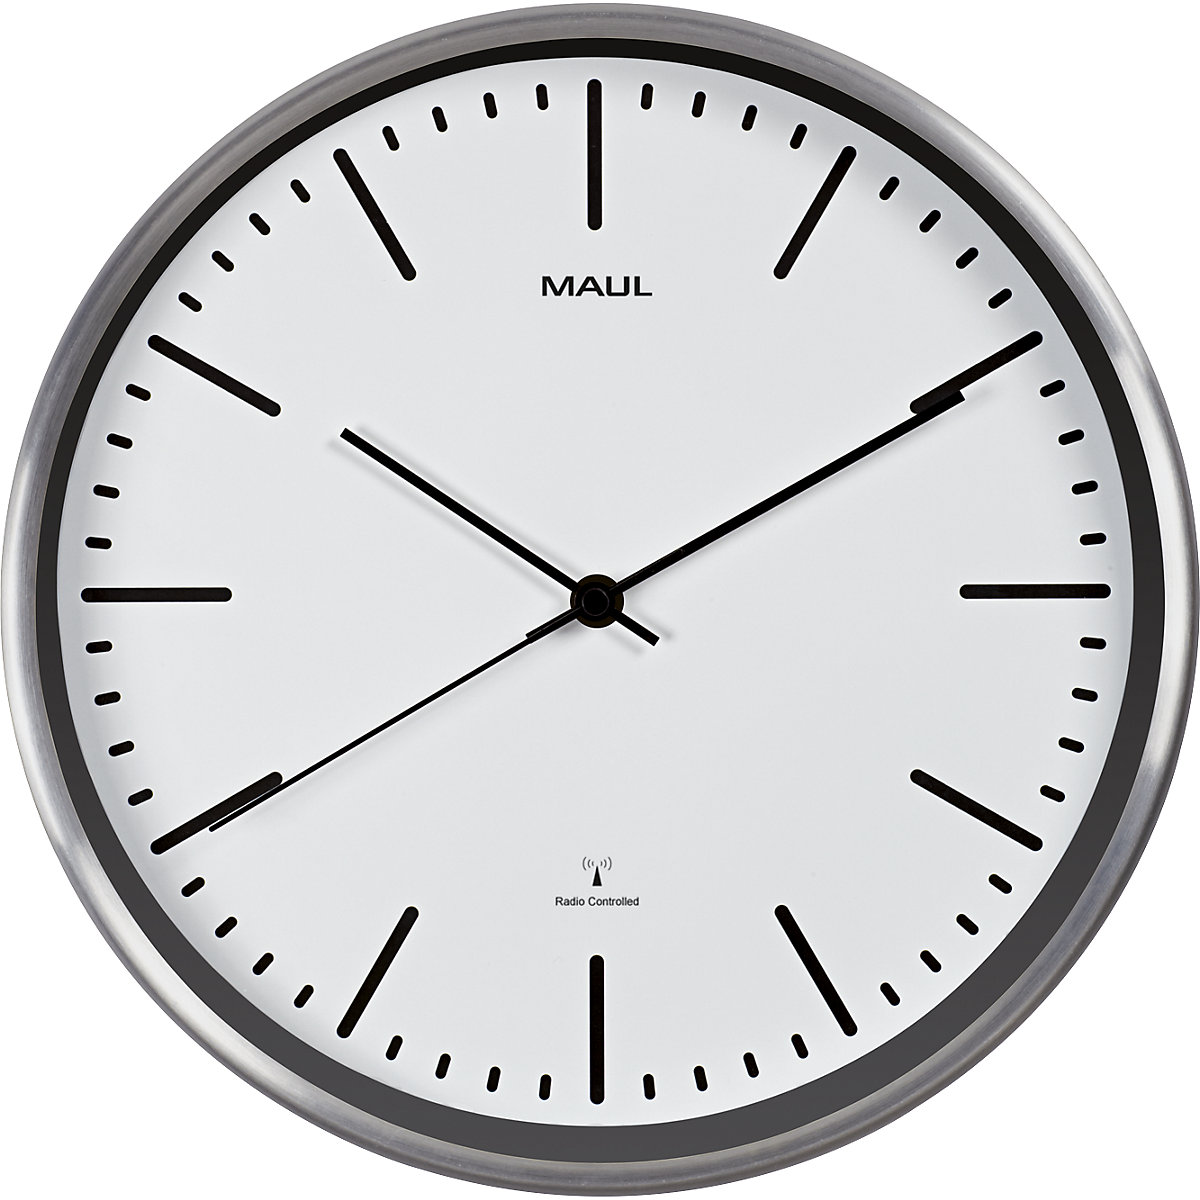 Zegar ścienny MAULfly – MAUL, aluminium szczotkowane, Ø 305 mm, mechanizm zegarowy sterowany radiem, biały-5